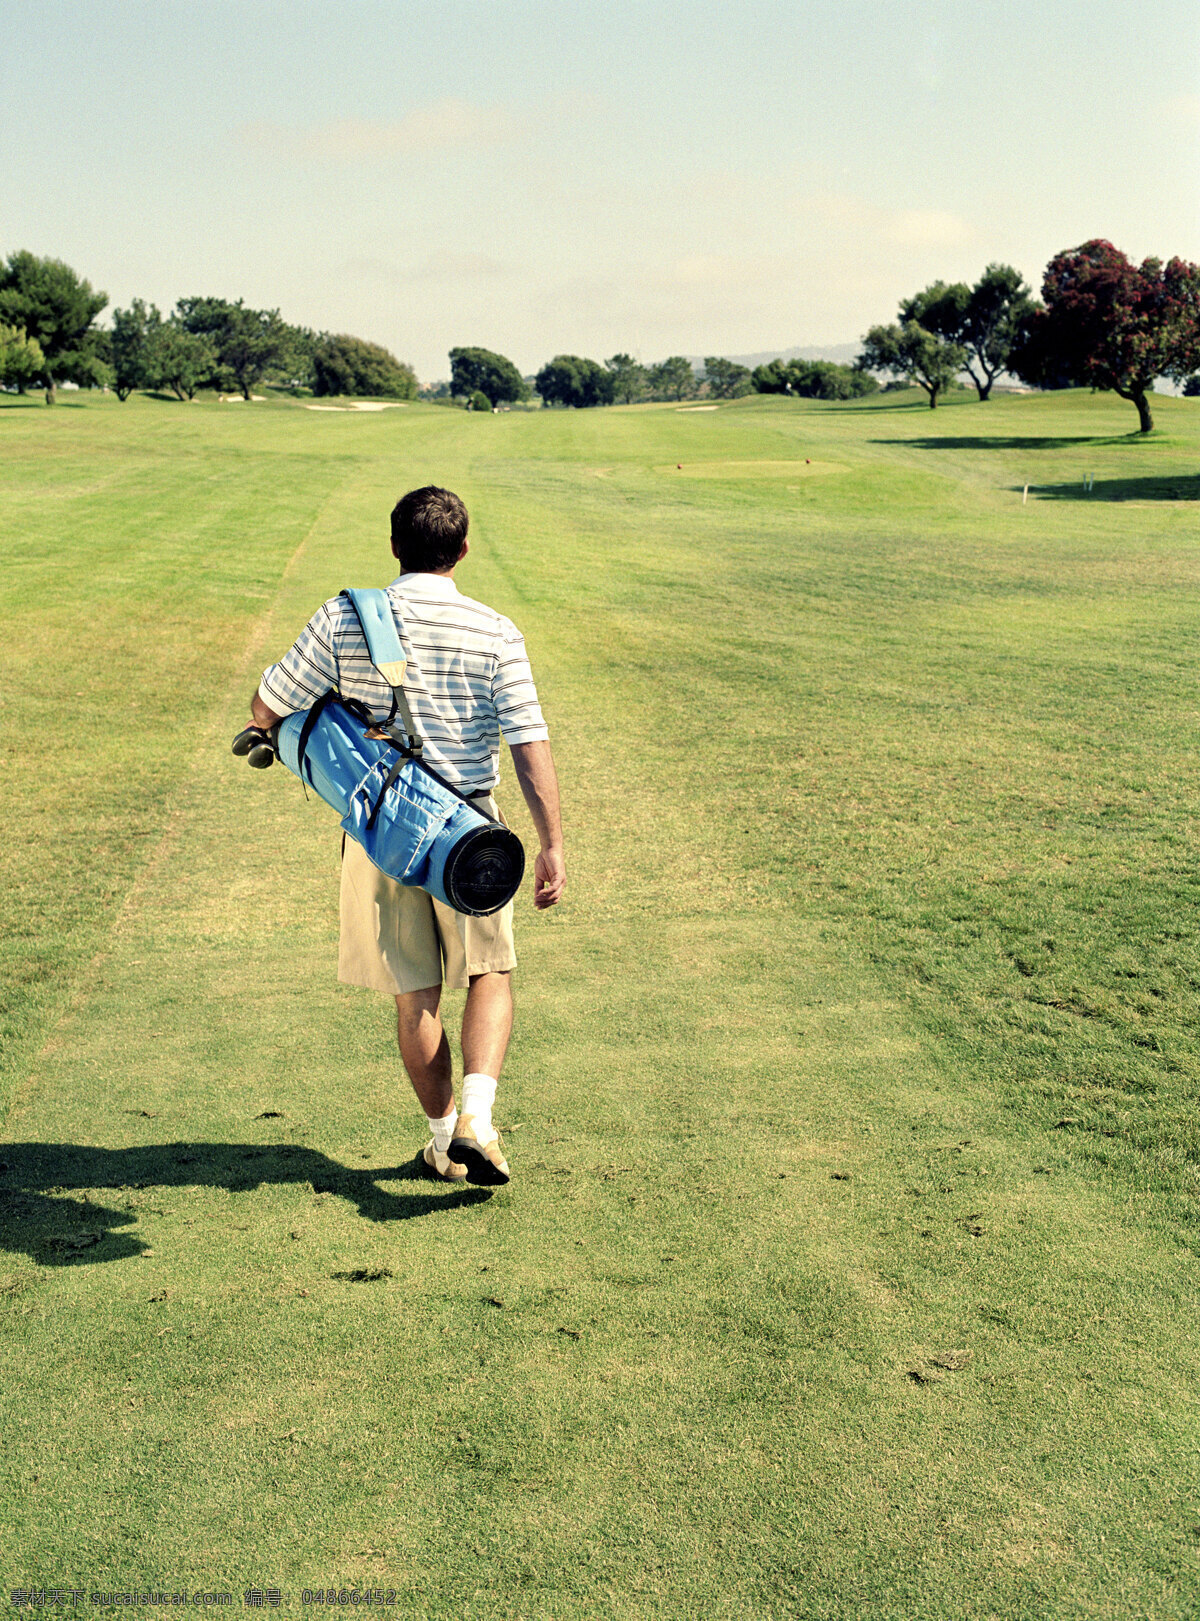 背着 高尔夫球 具 男人 背影 打高尔夫球 高尔夫球杆 高尔夫球场 男性 外国男人 外国人物 体育运动 生活百科